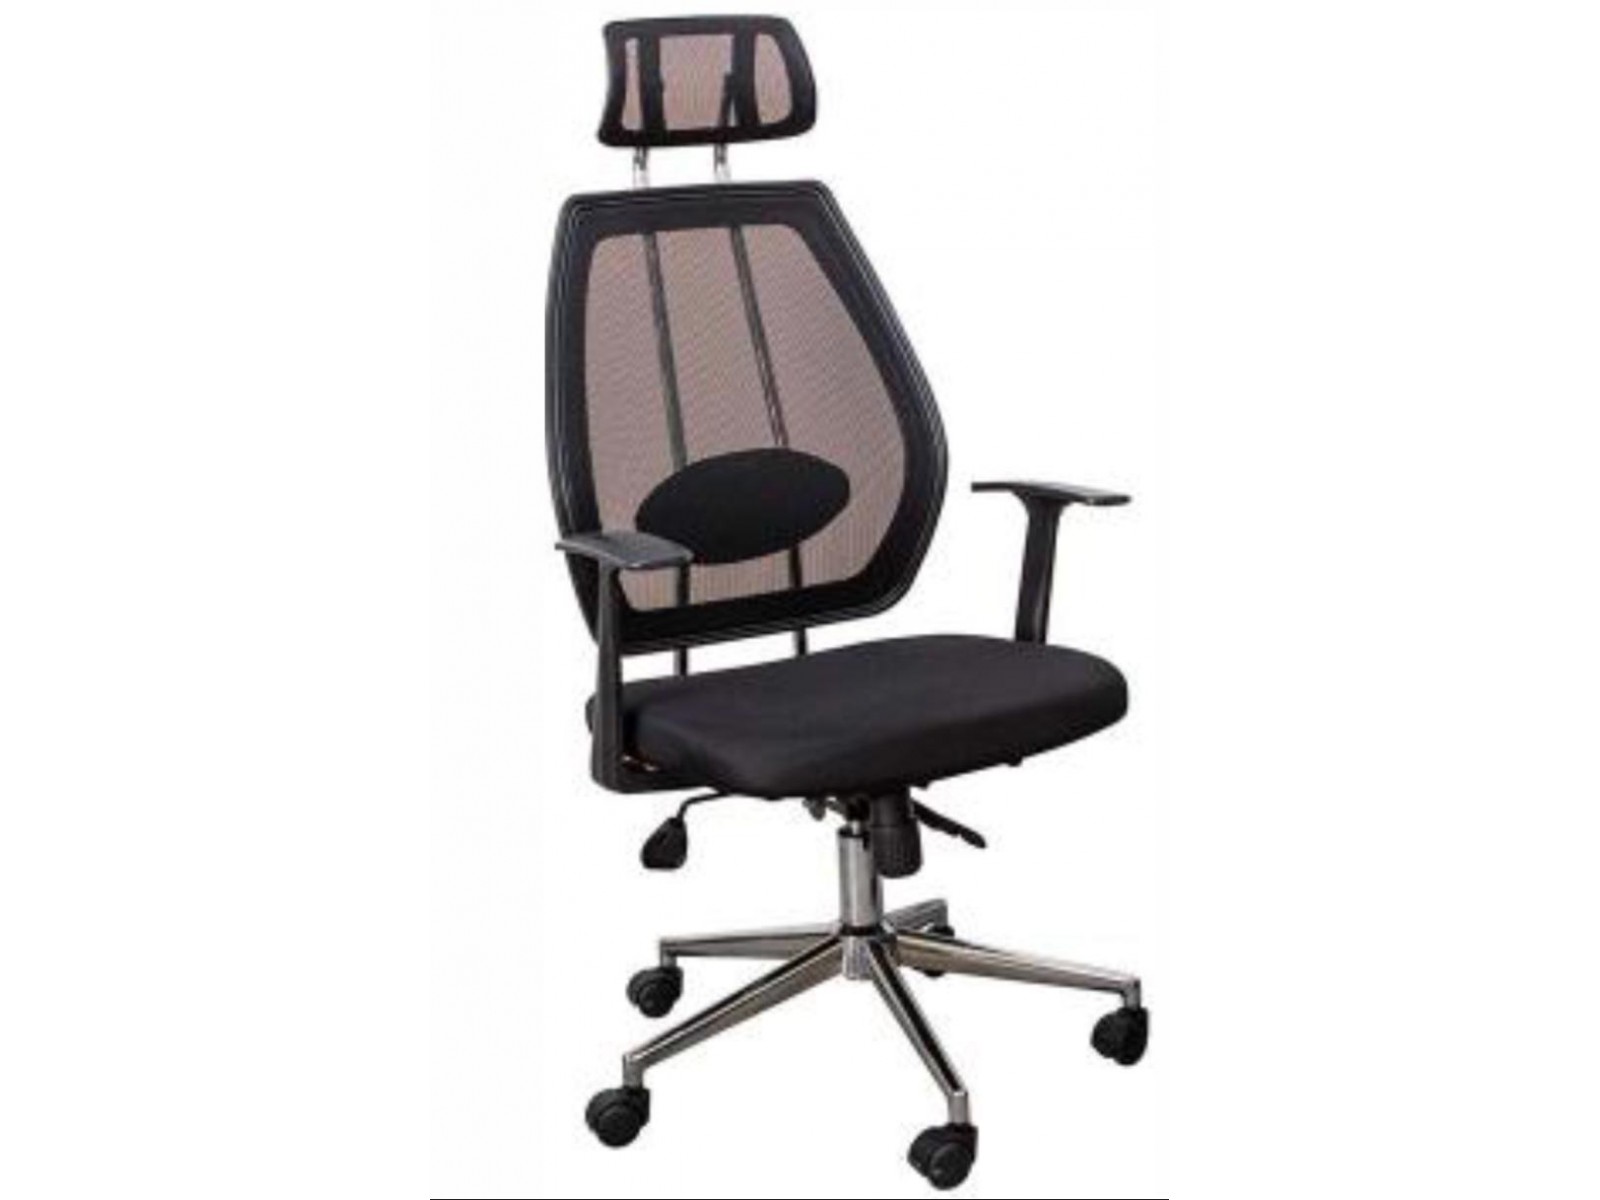 Zara Başlıklı Ofis Sandalyesi